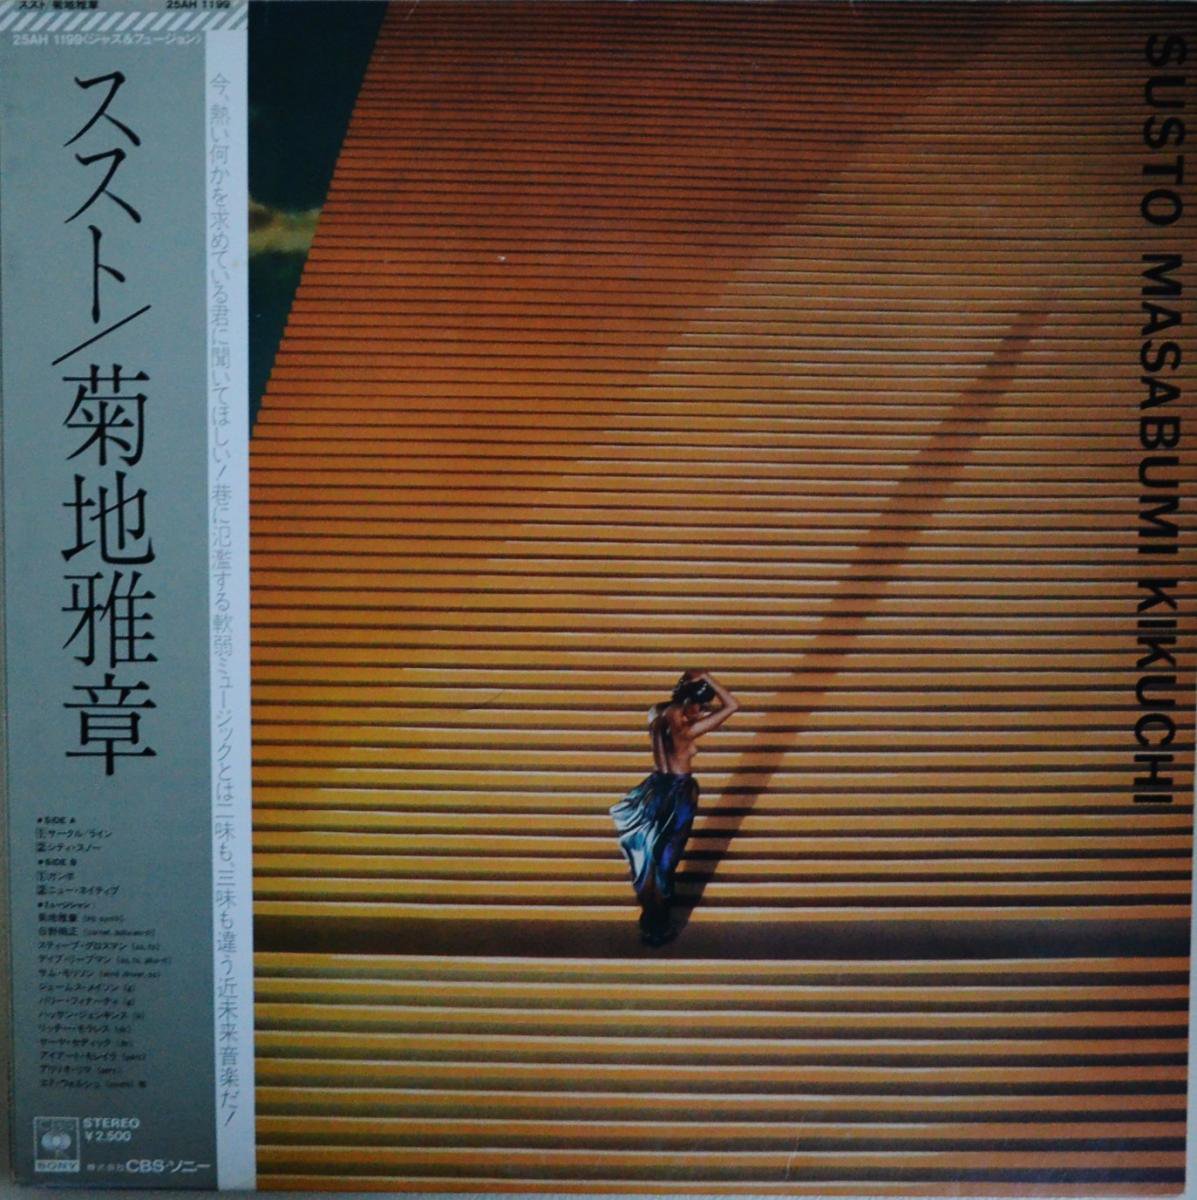 ϲ MASABUMI KIKUCHI /  SUSTO (LP)